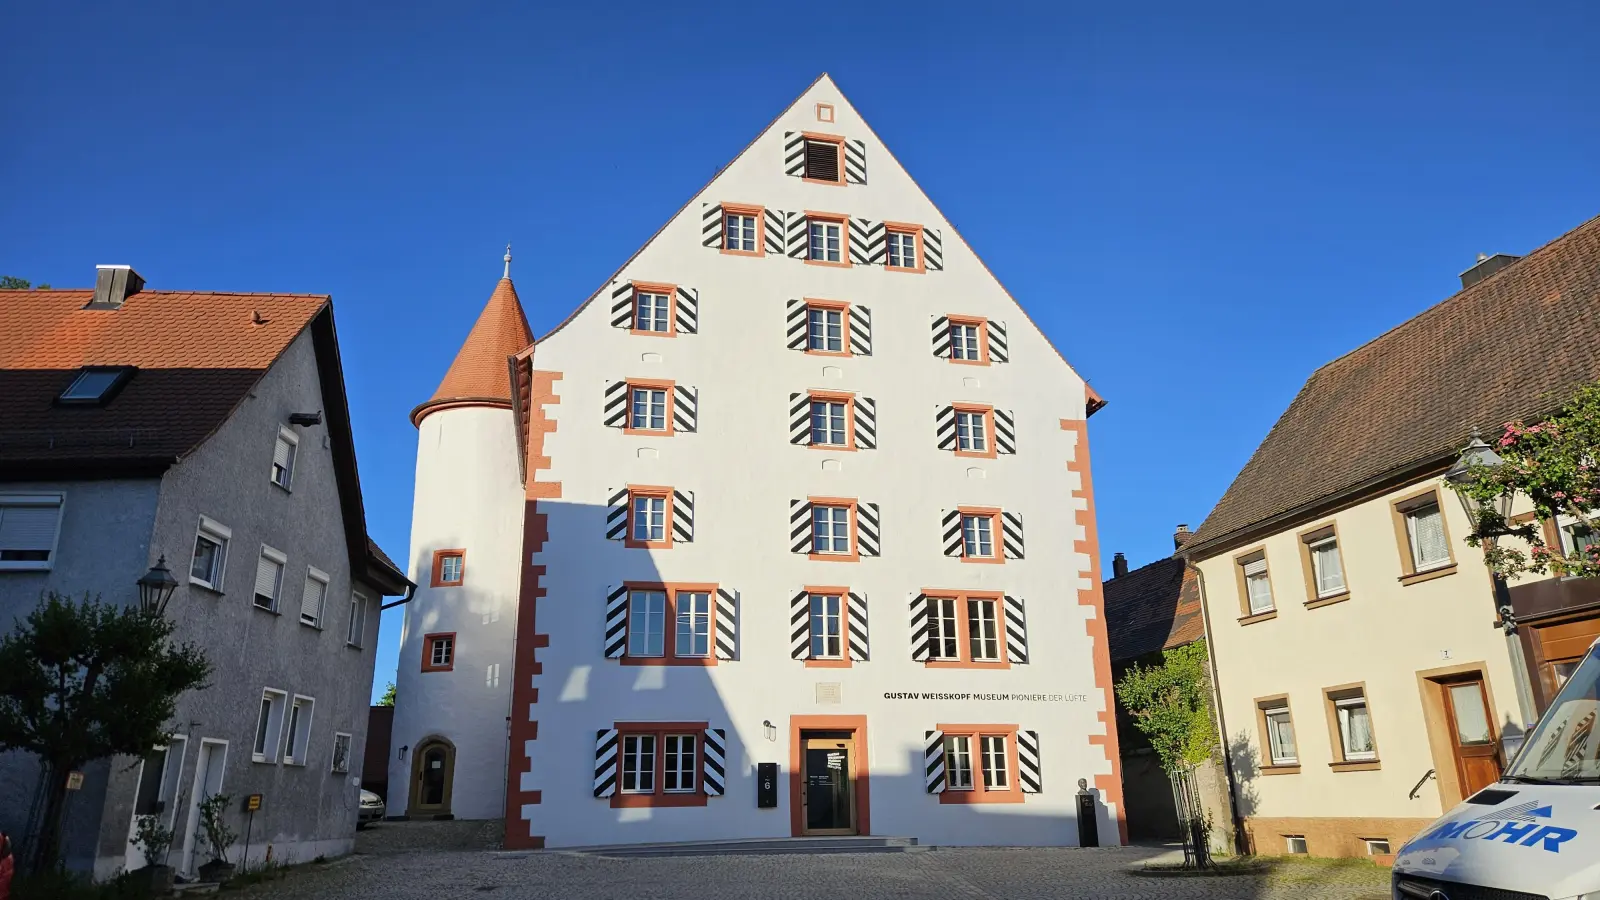 Frisch saniert erstrahlt das einstige Landgericht im Herzen Leutershausens, die Heimat des neuen Gustav-Weißkopf-Museums „Pioniere der Lüfte“. Nicht immer war es um das Haus so gut bestellt. (Foto: Wolfgang Grebenhof)